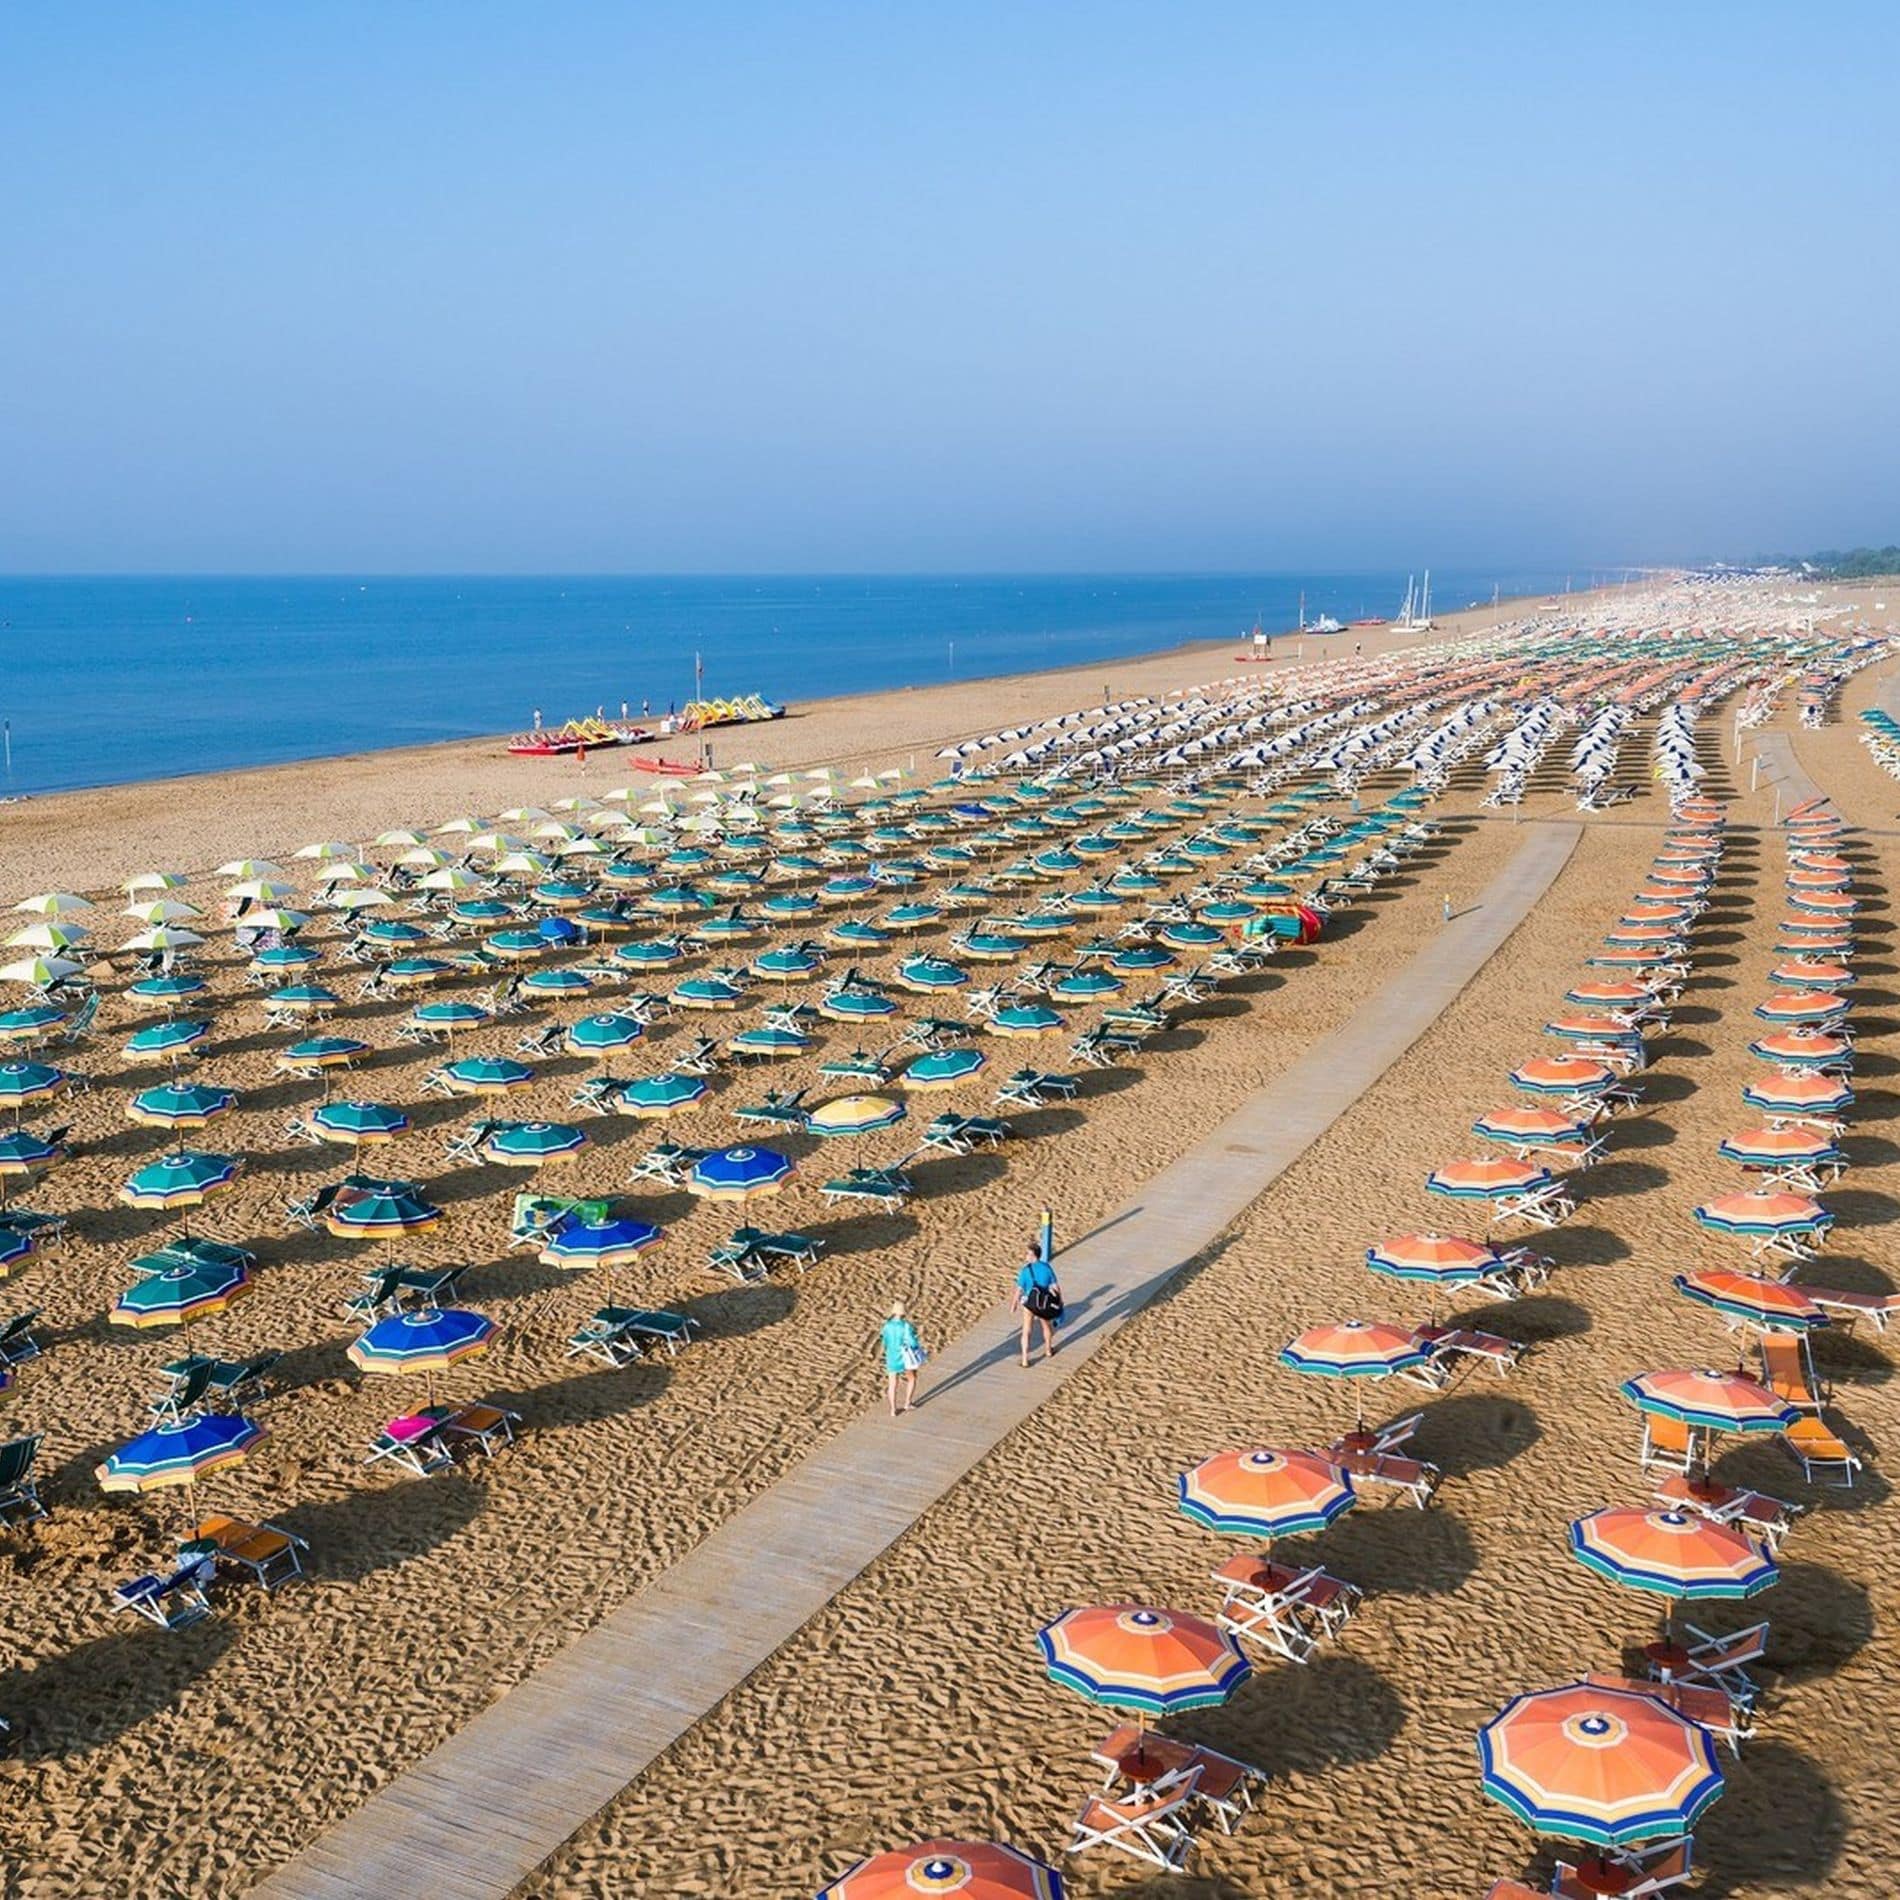 Farbige Sonnenschirme zieren über Kilometer den Sandstrand an der Adria in Bibione Spiaggia